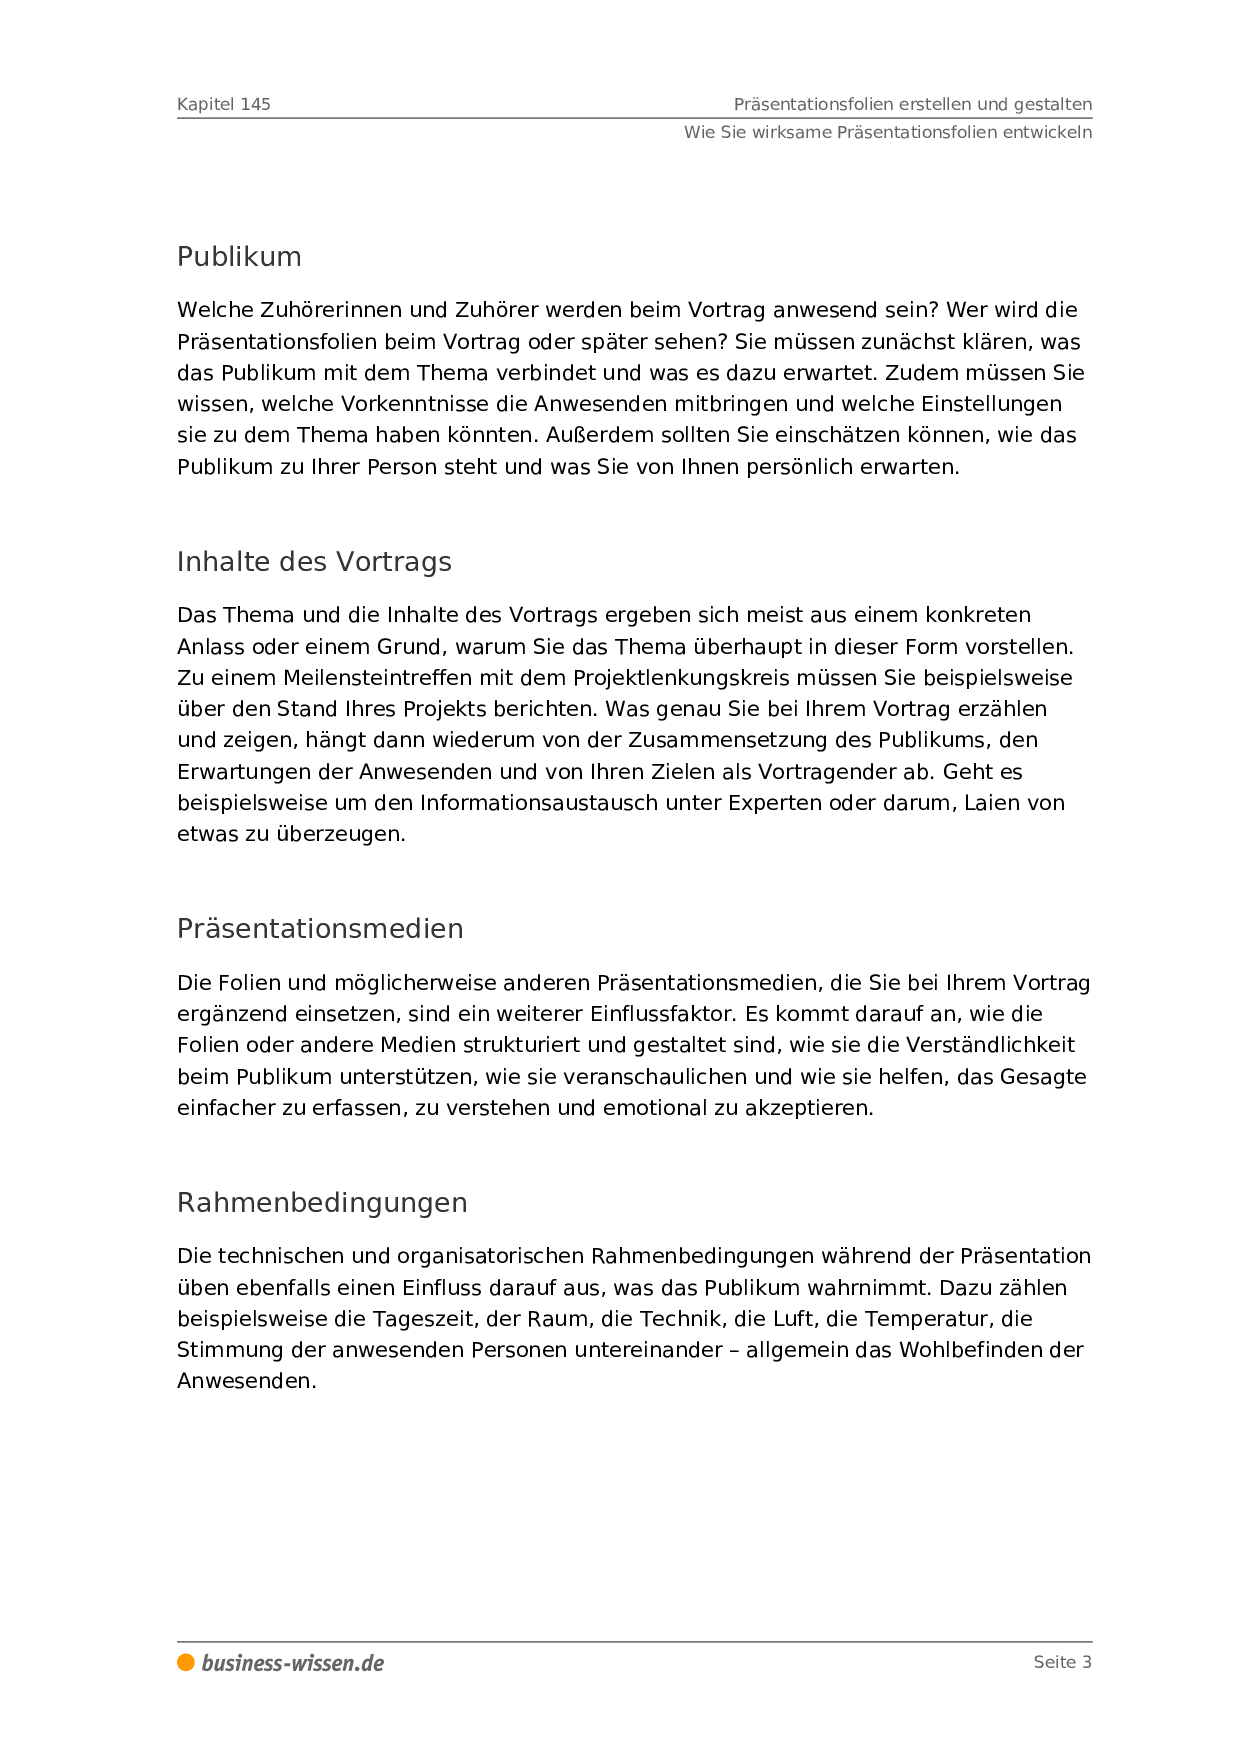 Prasentationsfolien Erstellen Und Gestalten Management Handbuch Business Wissen De